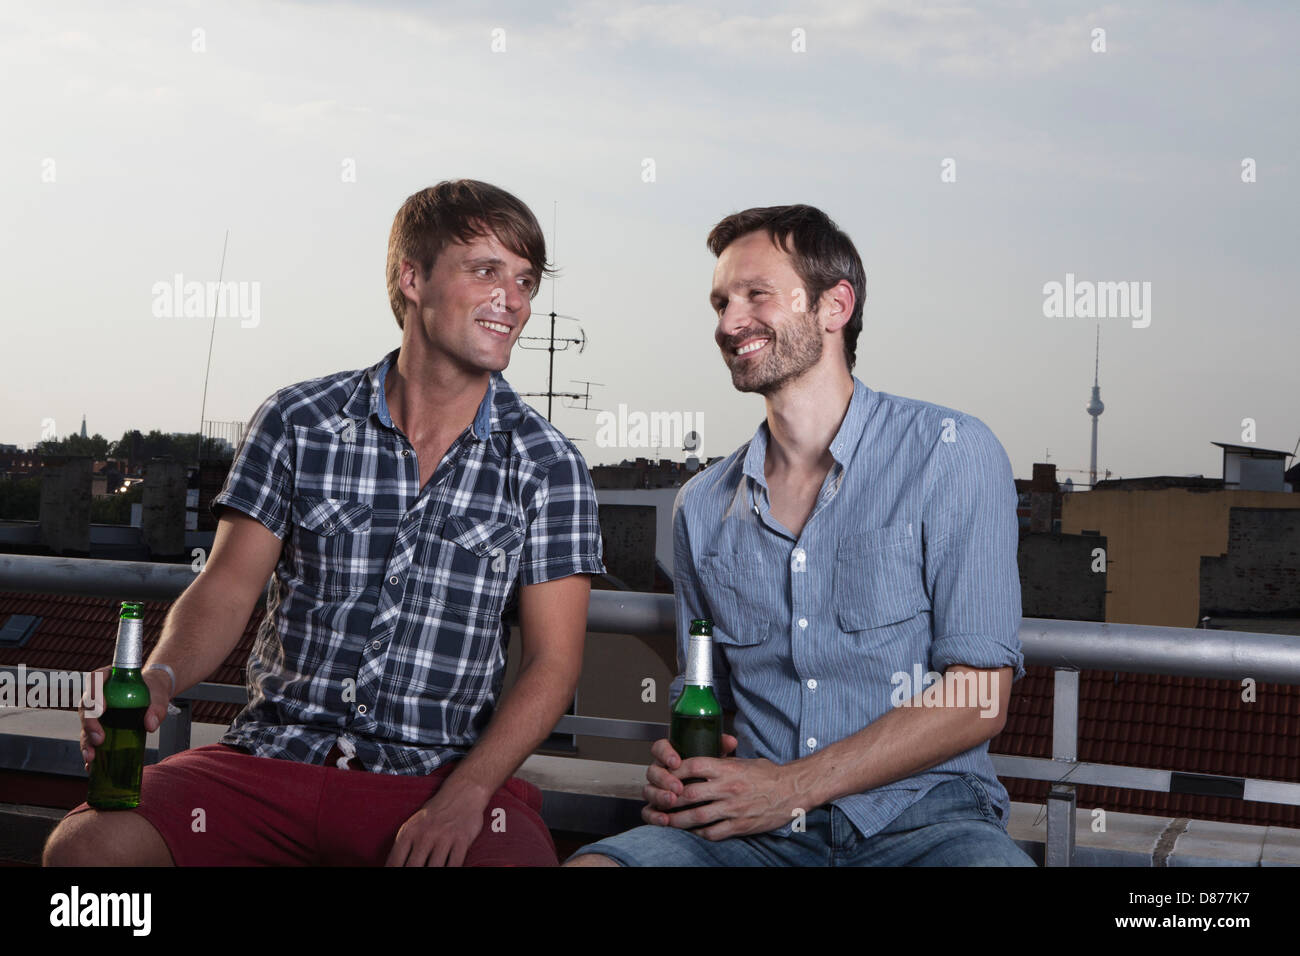 Deutschland, Berlin, Männer mit Flaschen auf Dachterrasse, Lächeln Stockfoto